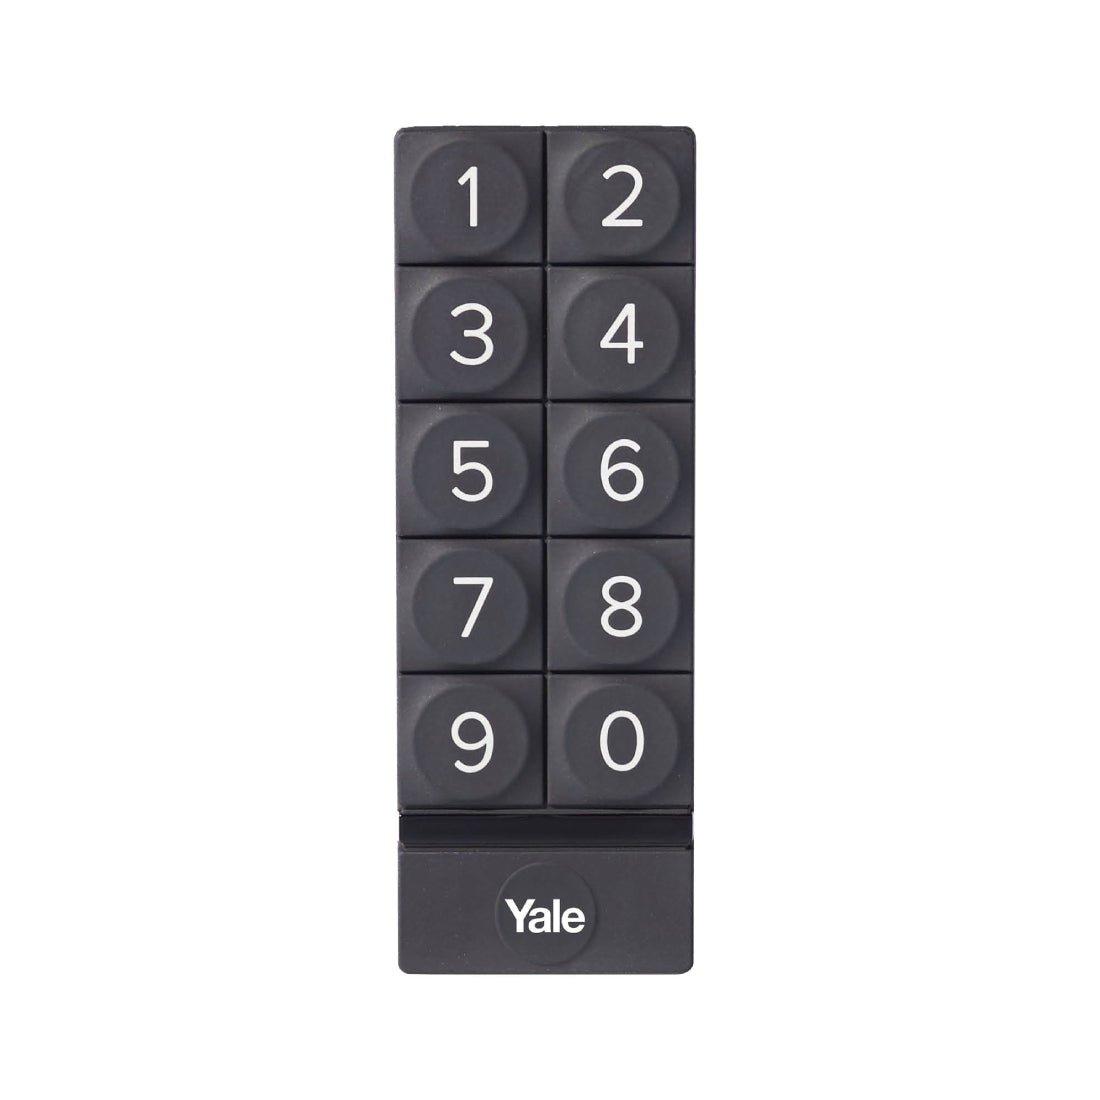 Yale Smart Keypad - أكسسوارات ذكية - Store 974 | ستور ٩٧٤